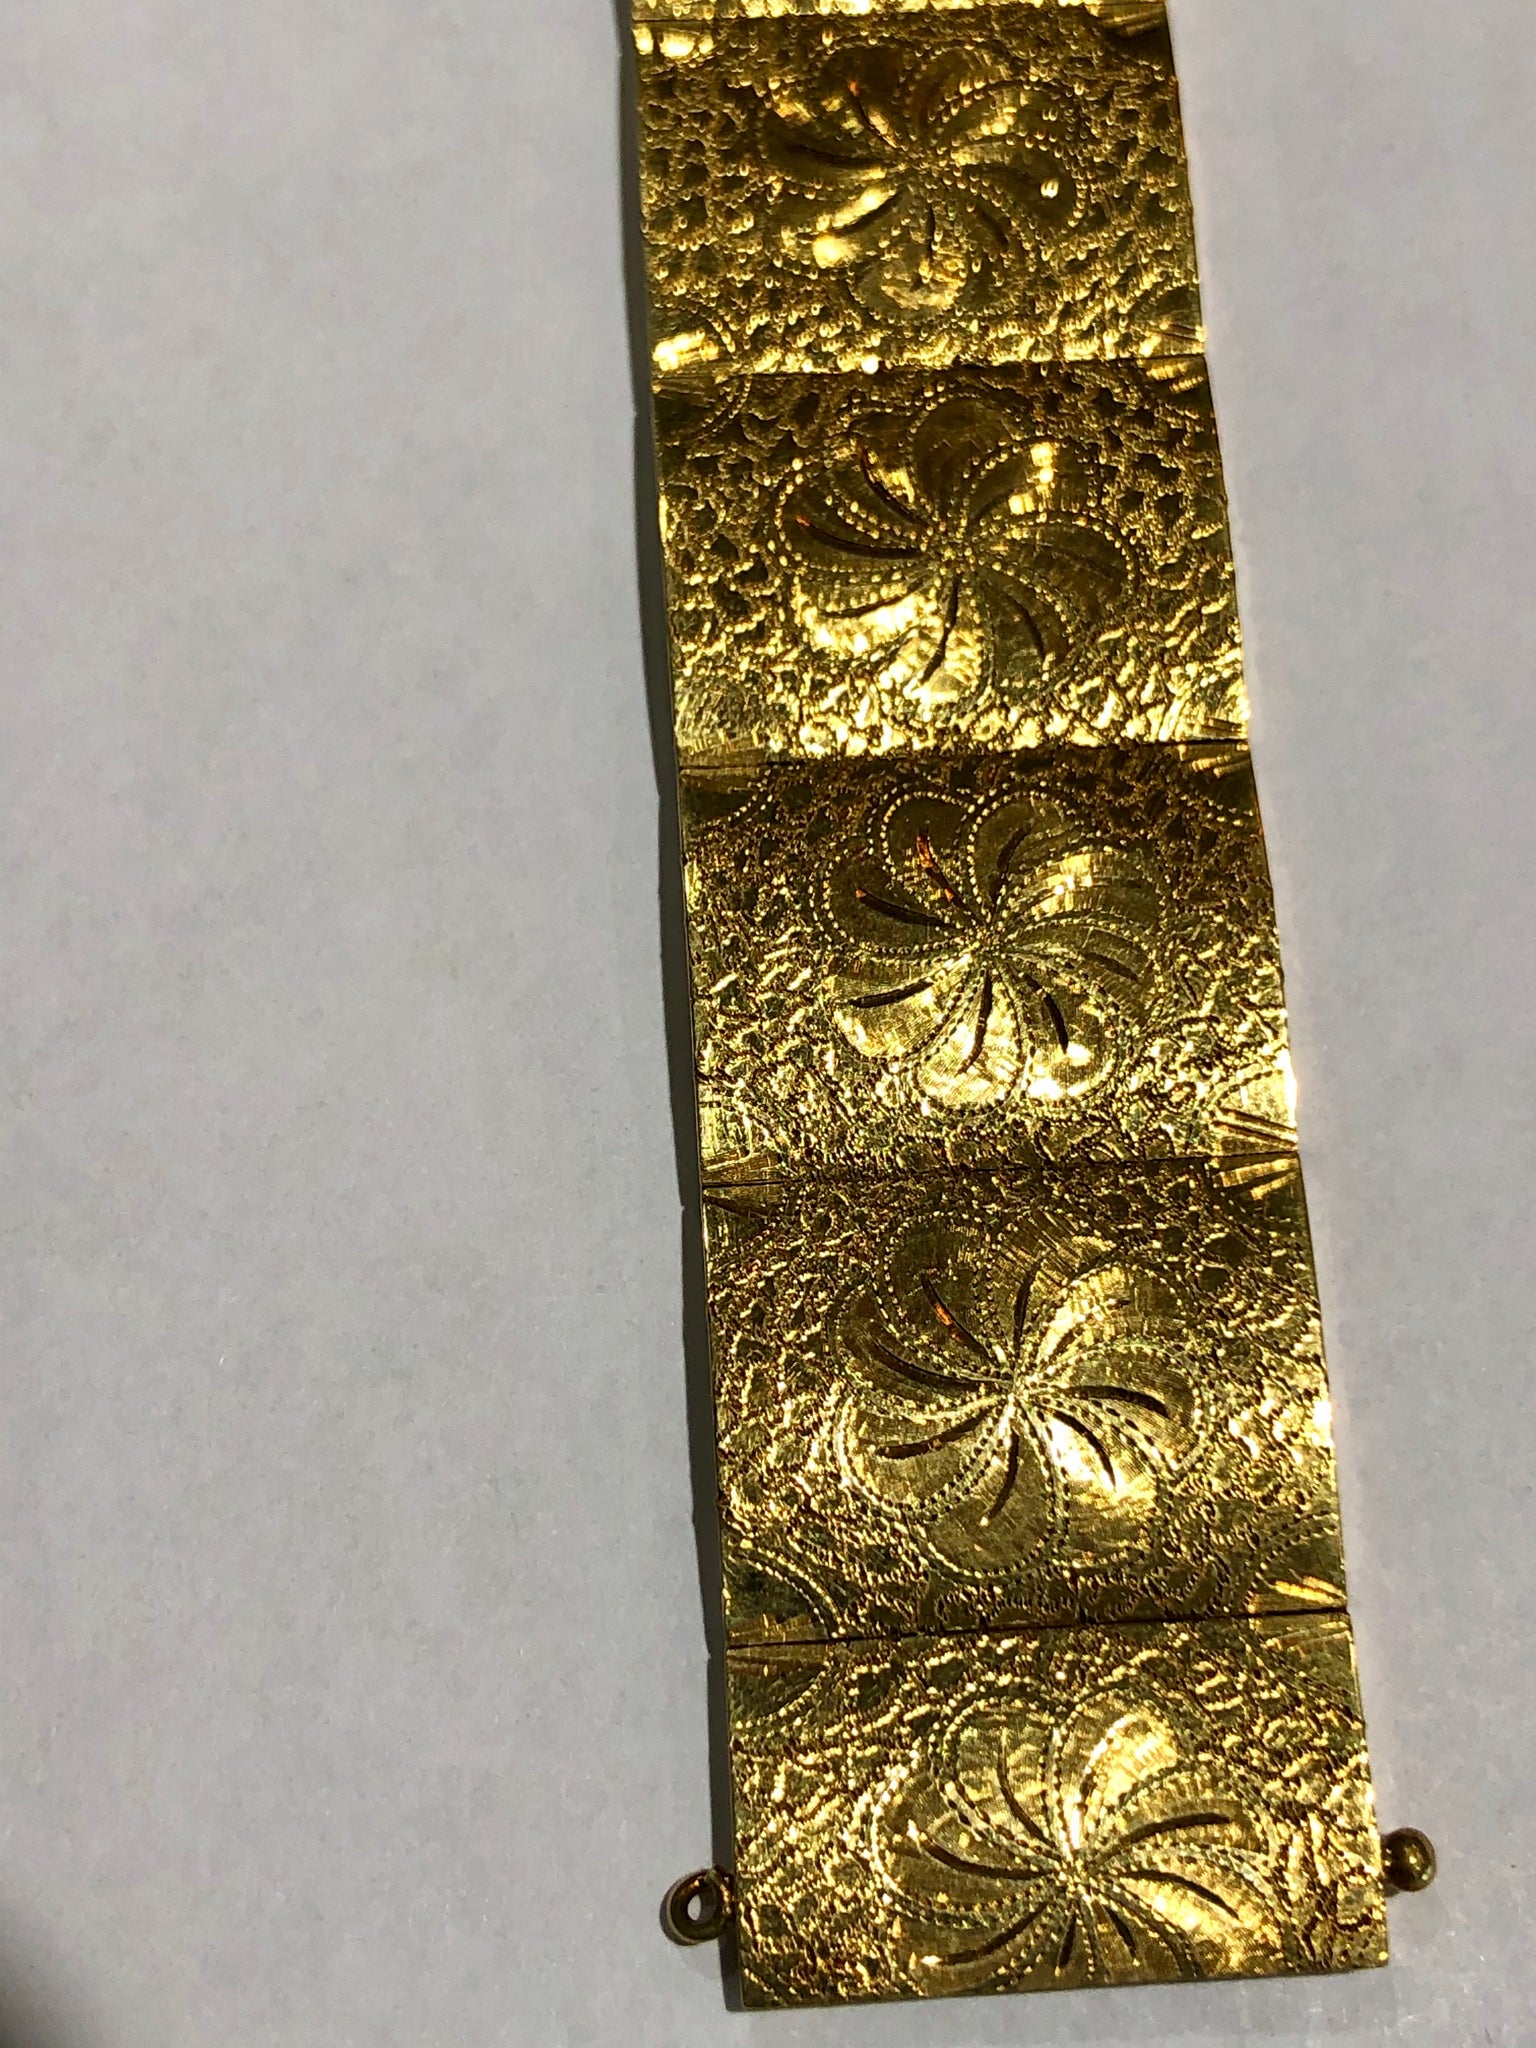 Vintage 18 Karat Yellow Gold Hand Engraving Bracelet